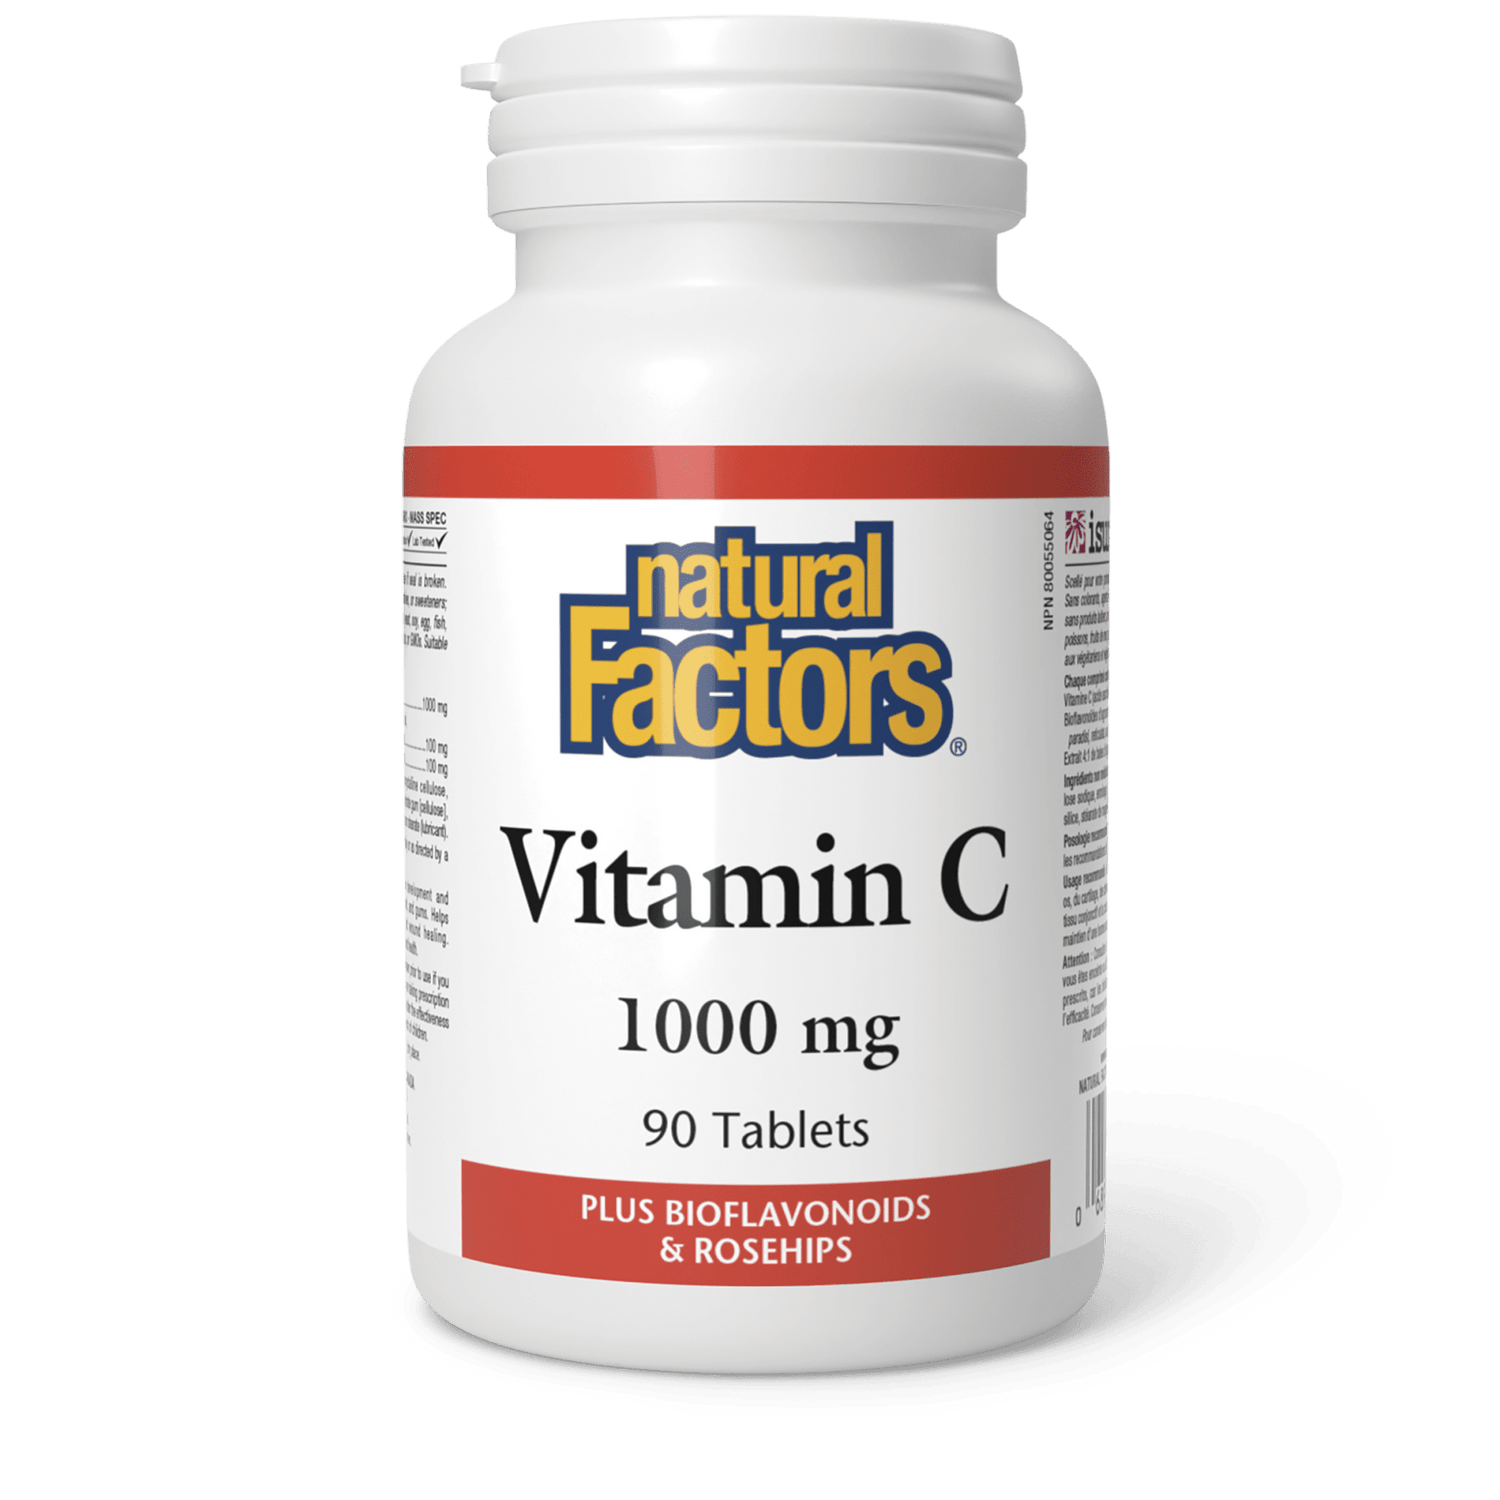 Vitamin C 1000 mg, Natural Factors|v|image|1344